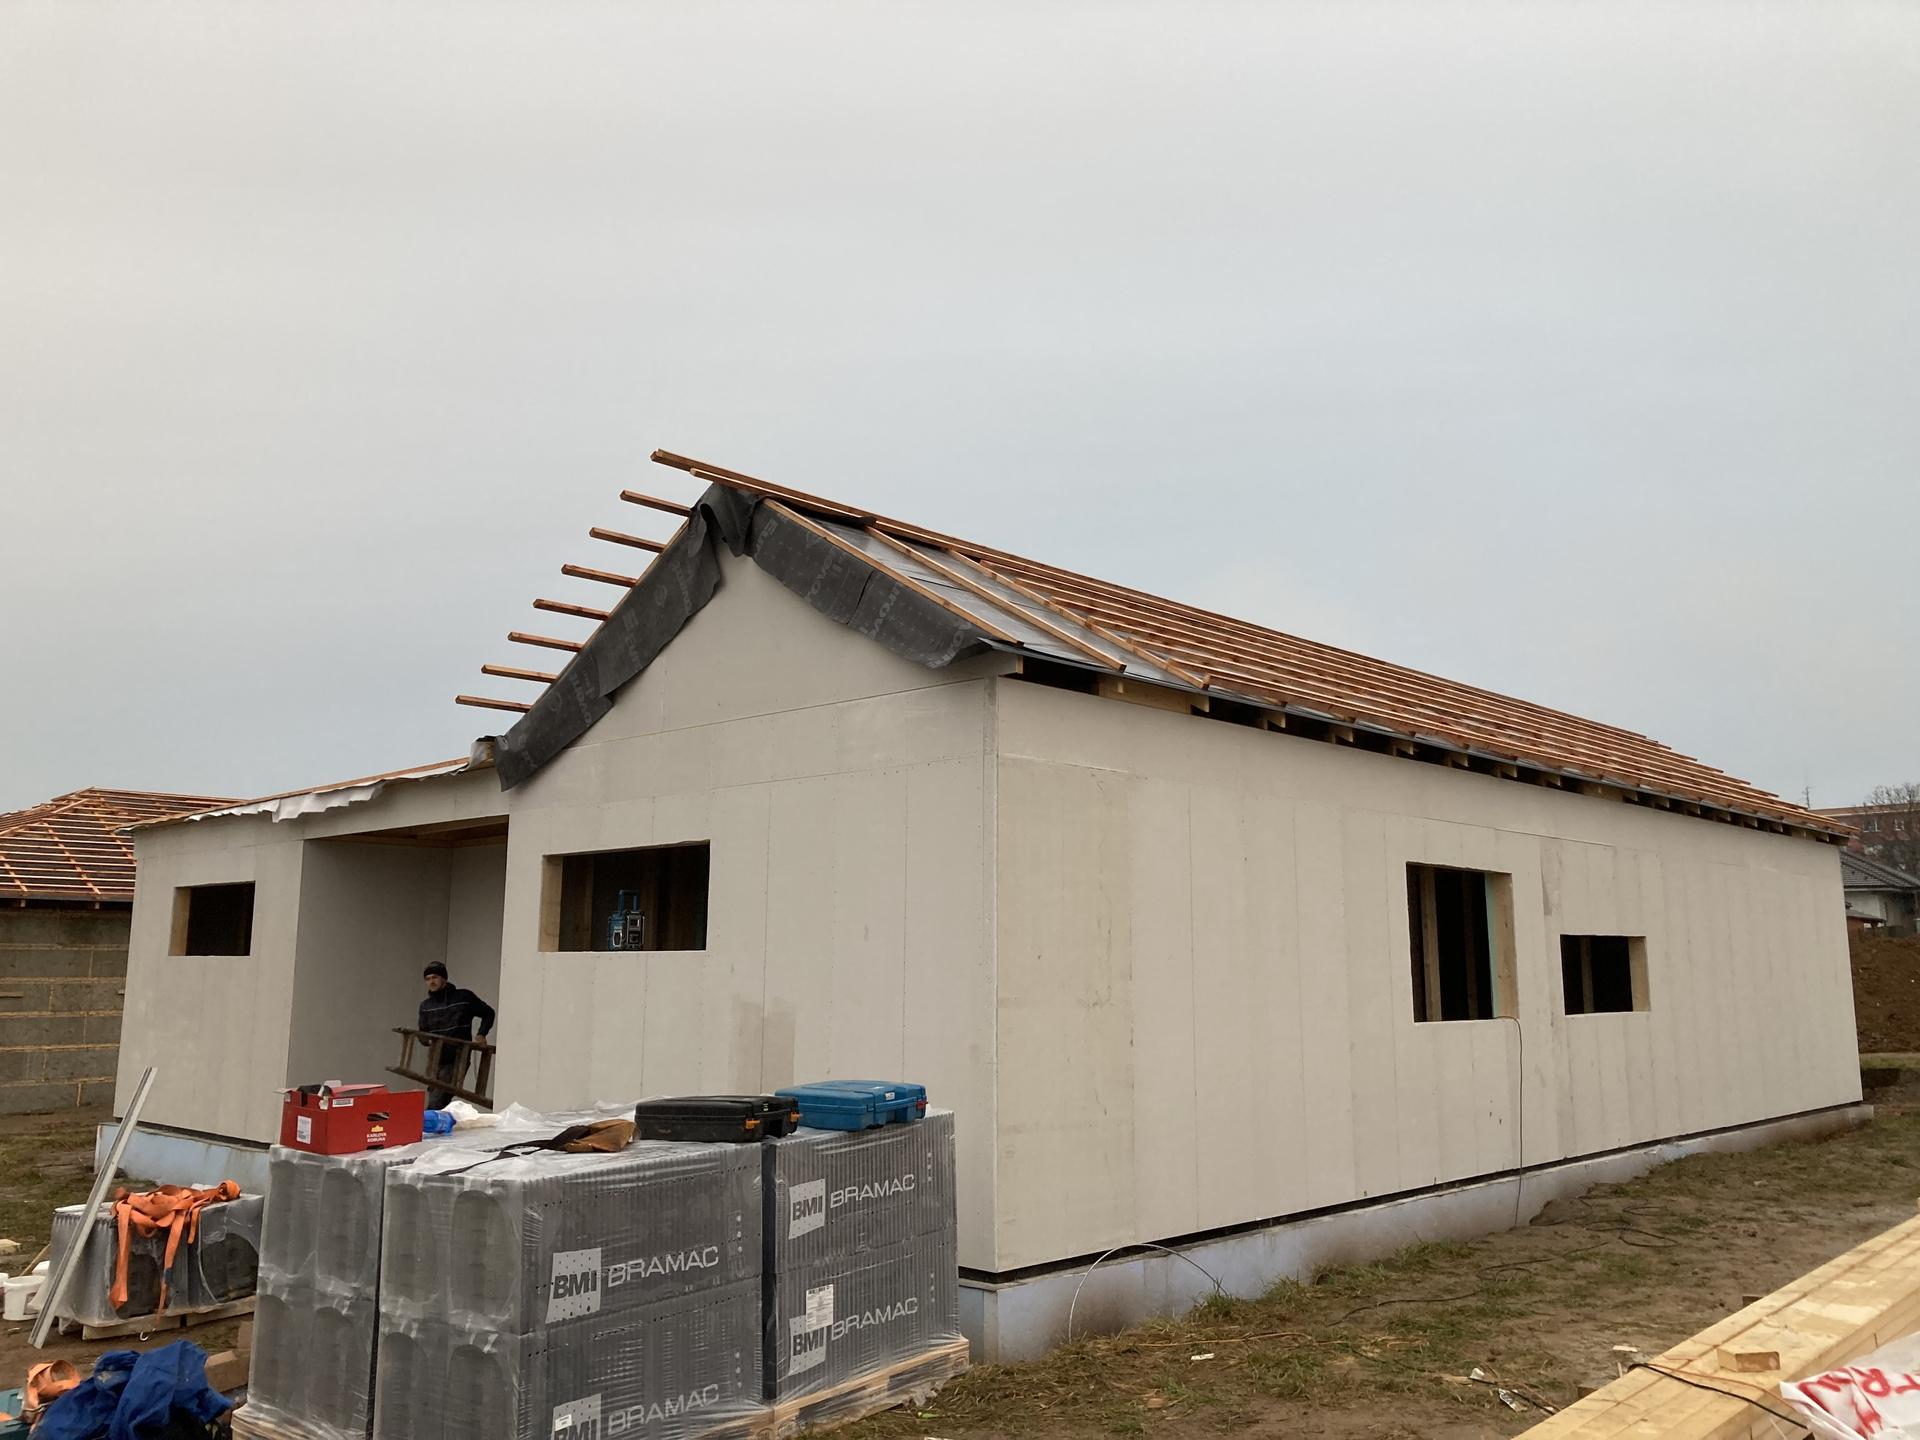 Stavba našeho domku - 13.11.2021 Zaklopeno, tašky na pokrytí střechy připraveny